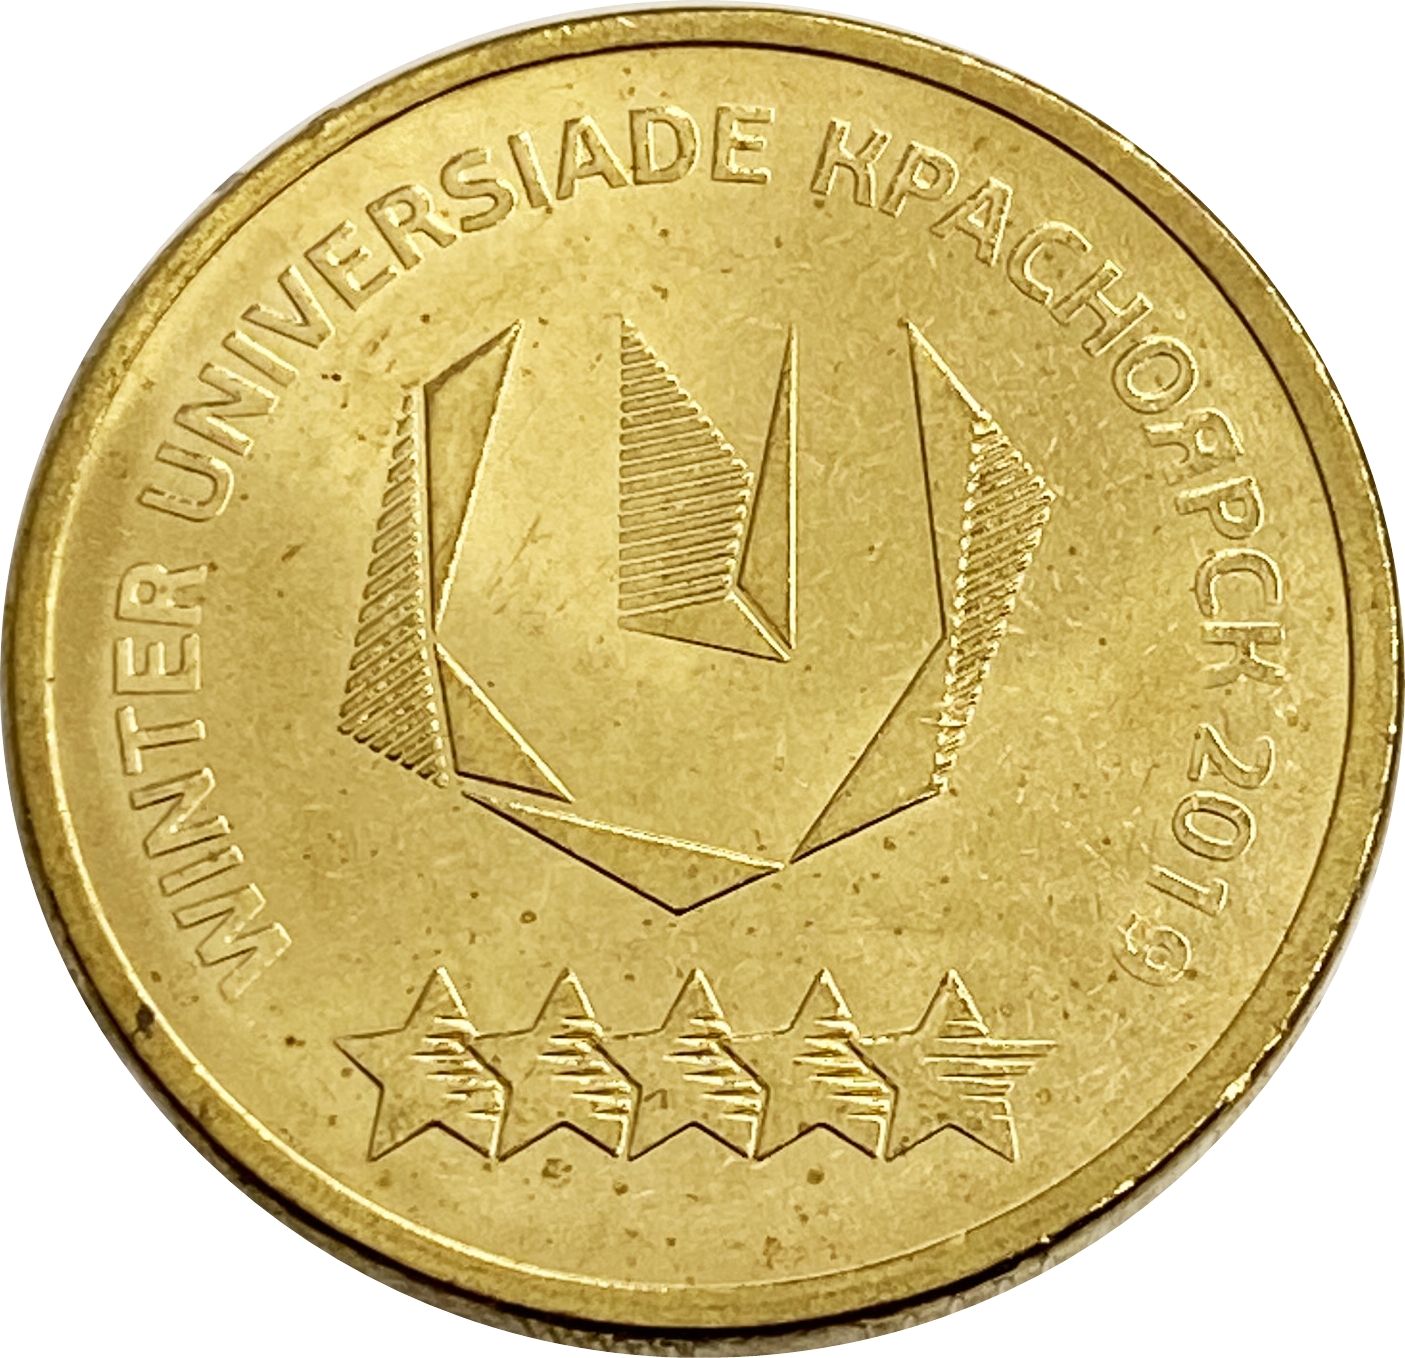 10 рублей 2018 зимняя универсиада в Красноярске 2019 «Логотип»